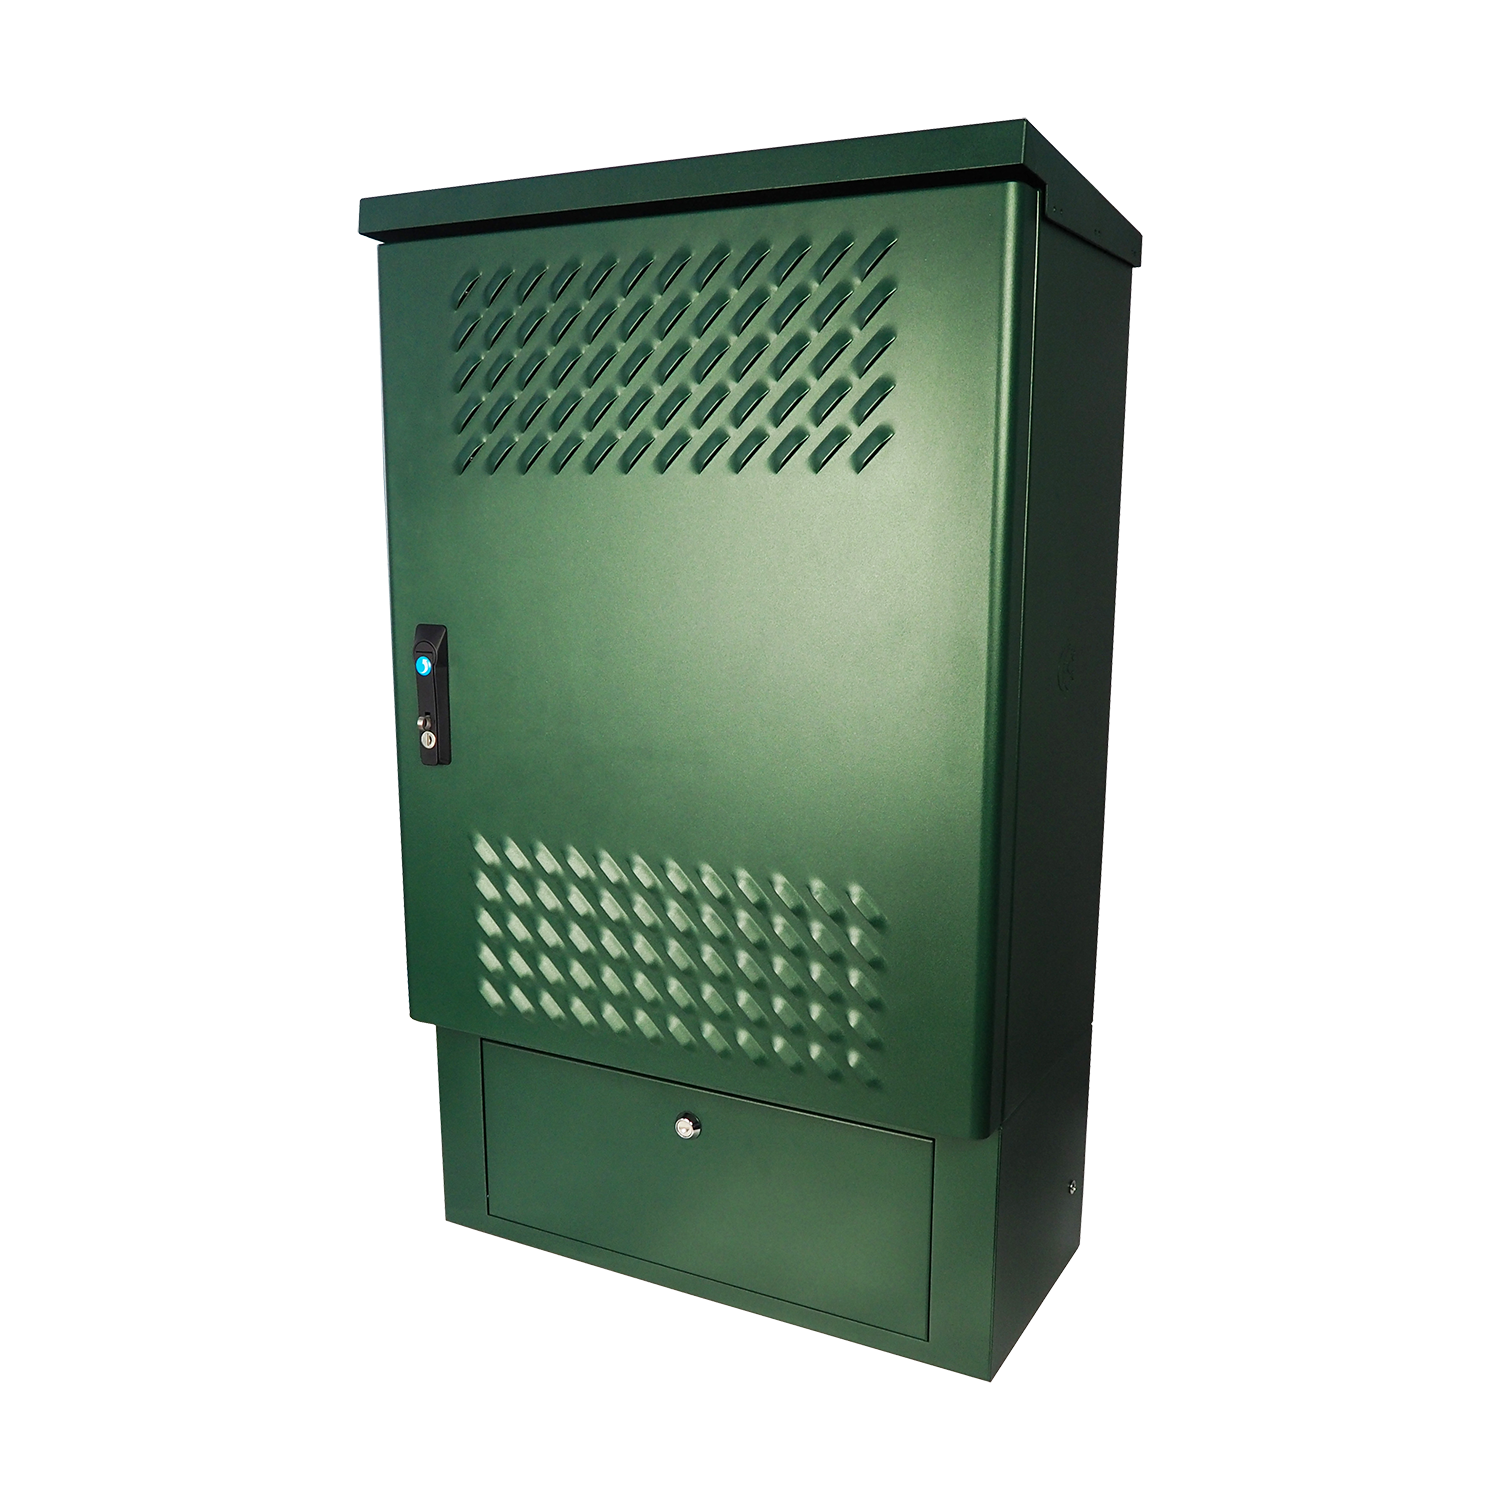 Шкаф уличный всепогодный напольный 24U (Ш1000 × Г900) с электроотсеком, три двери от ЦМО